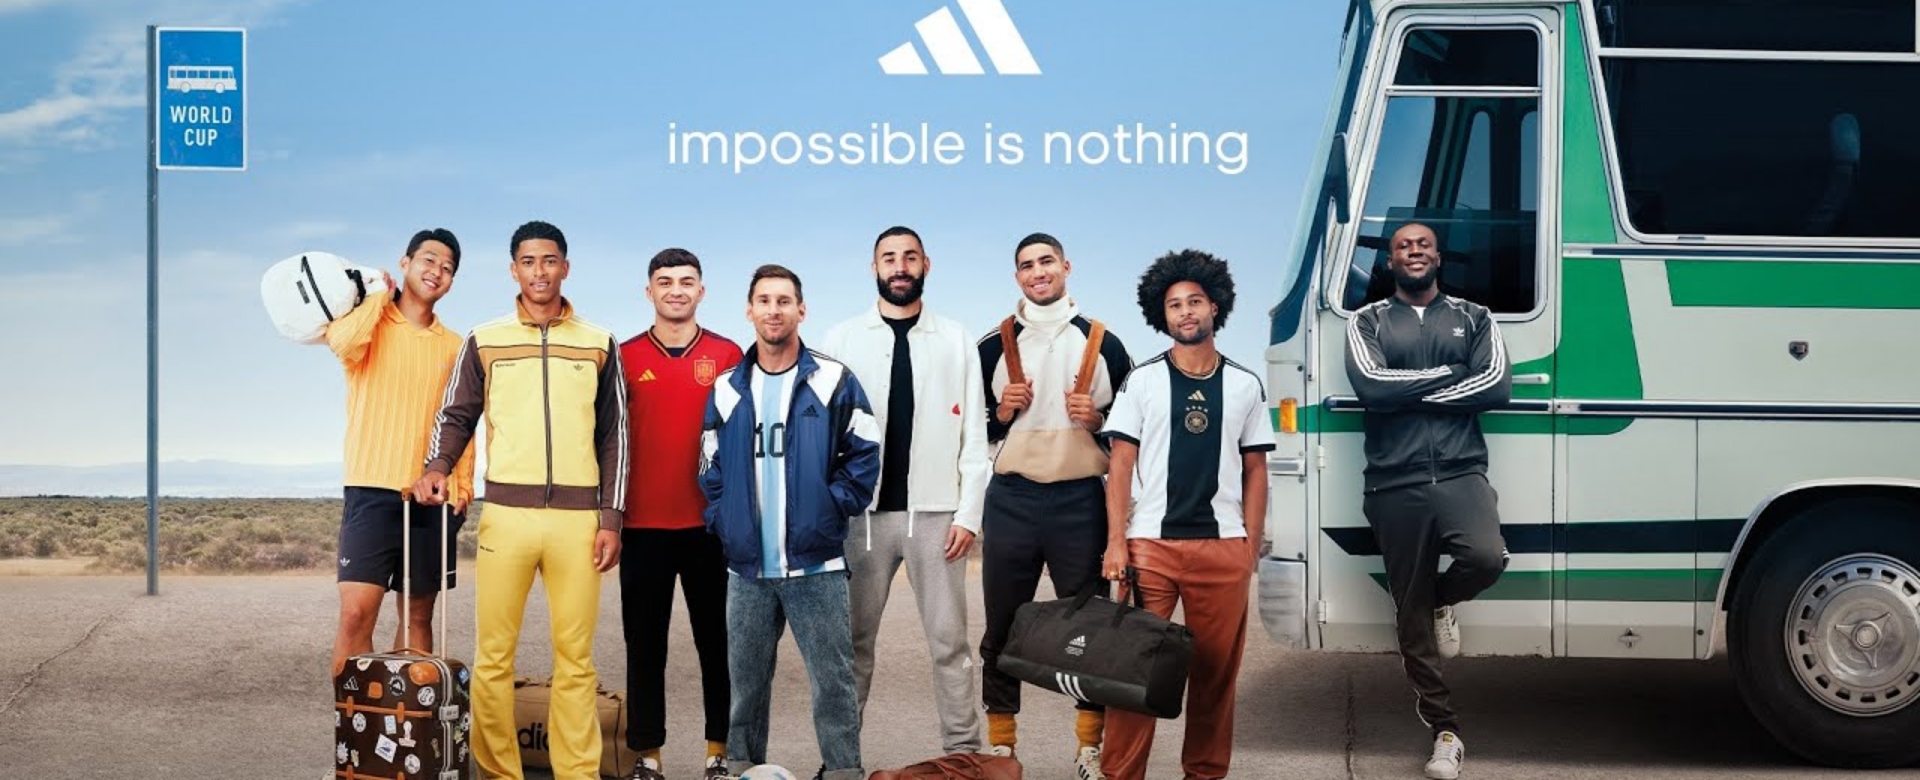 World Cup 2022: adidas công chiếu phim ngắn quy tụ các ngôi sao bóng đá huyền thoại